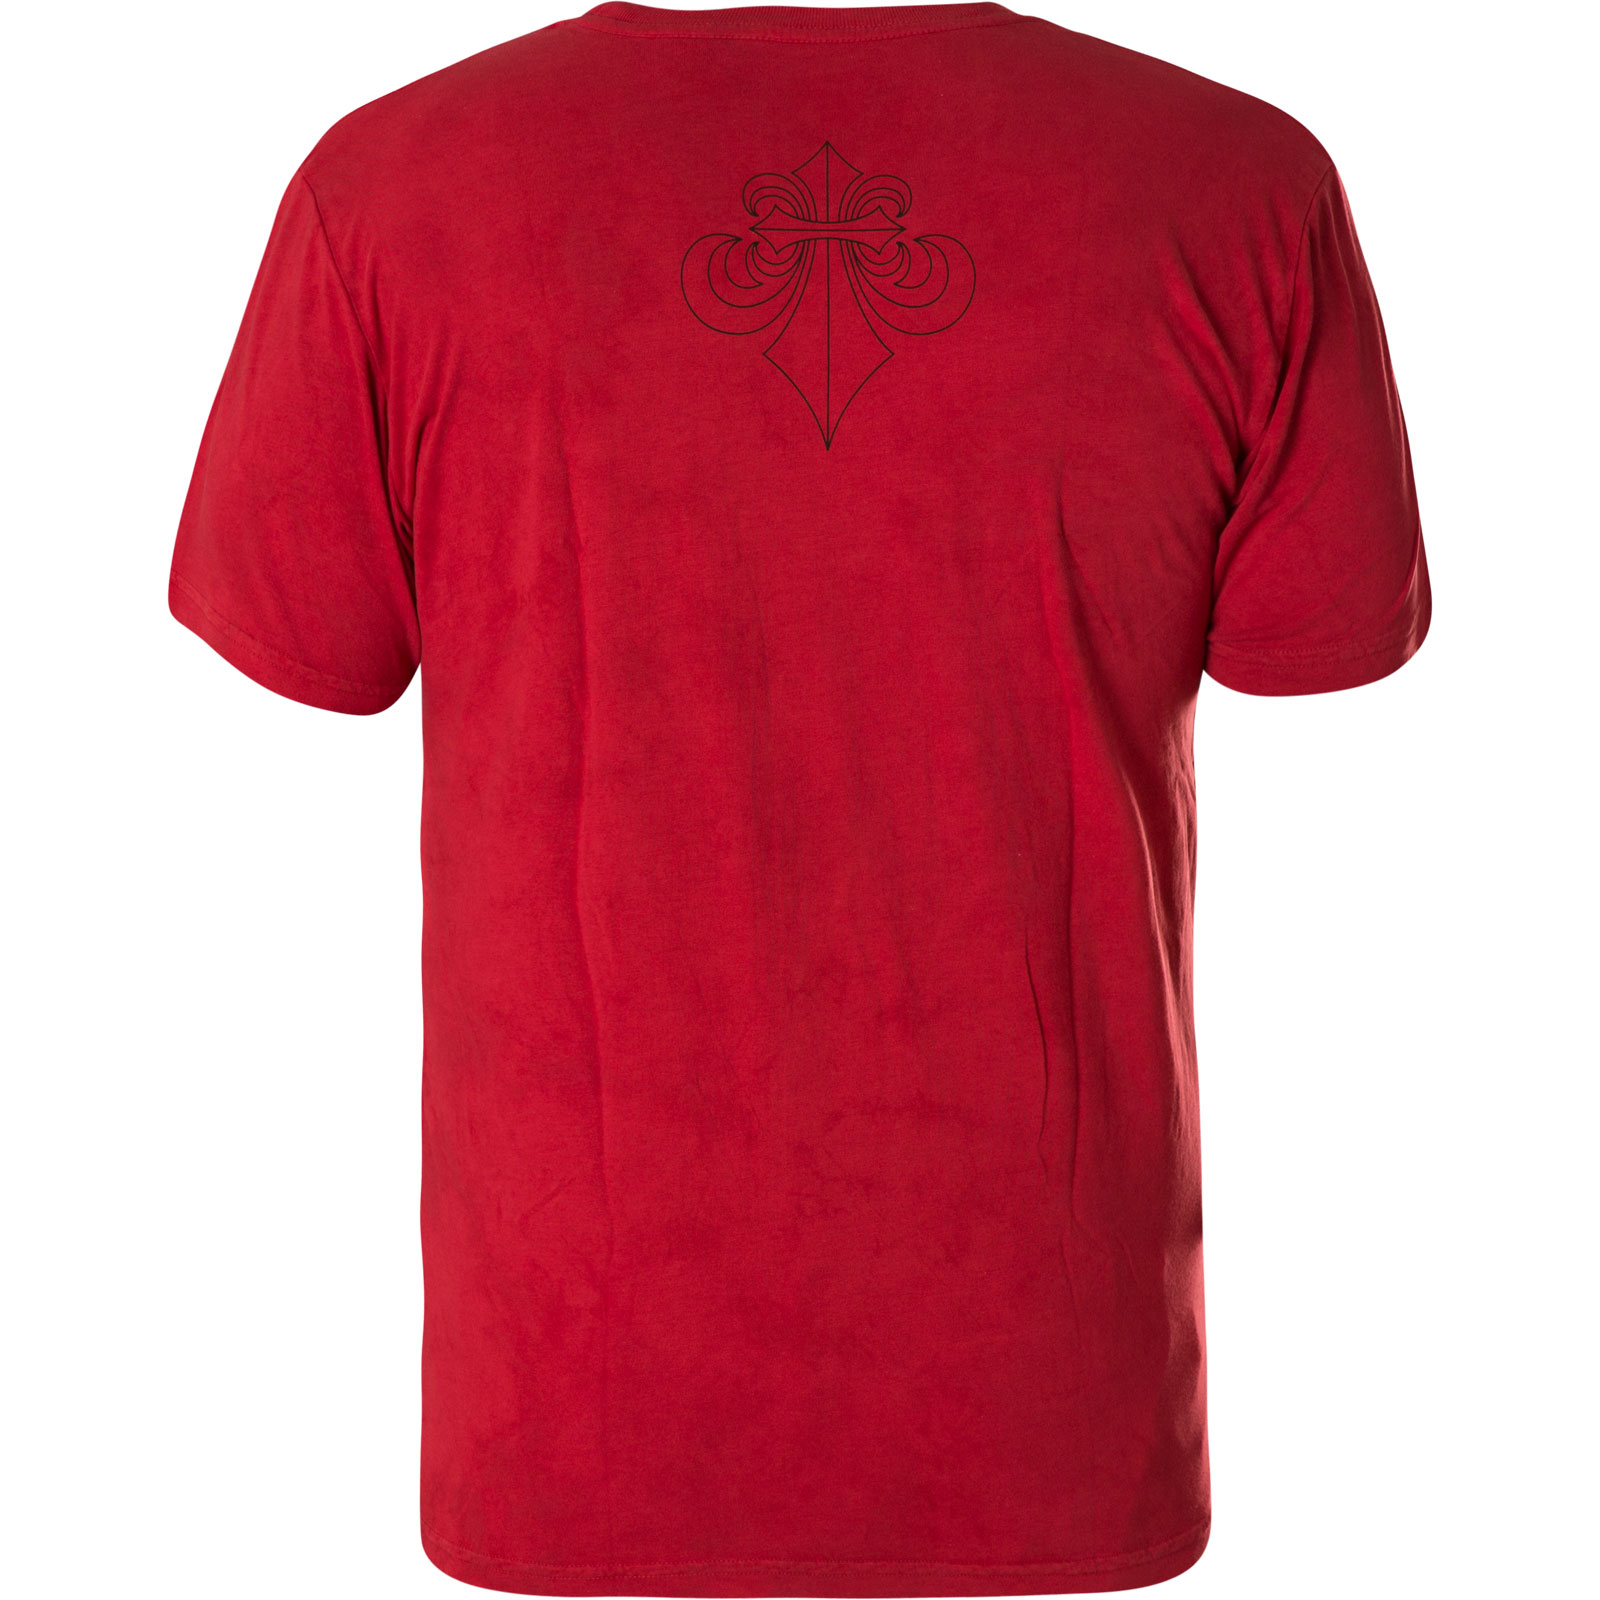 Affliction Night vermummten T-Shirt in Reitern Rot mit Black